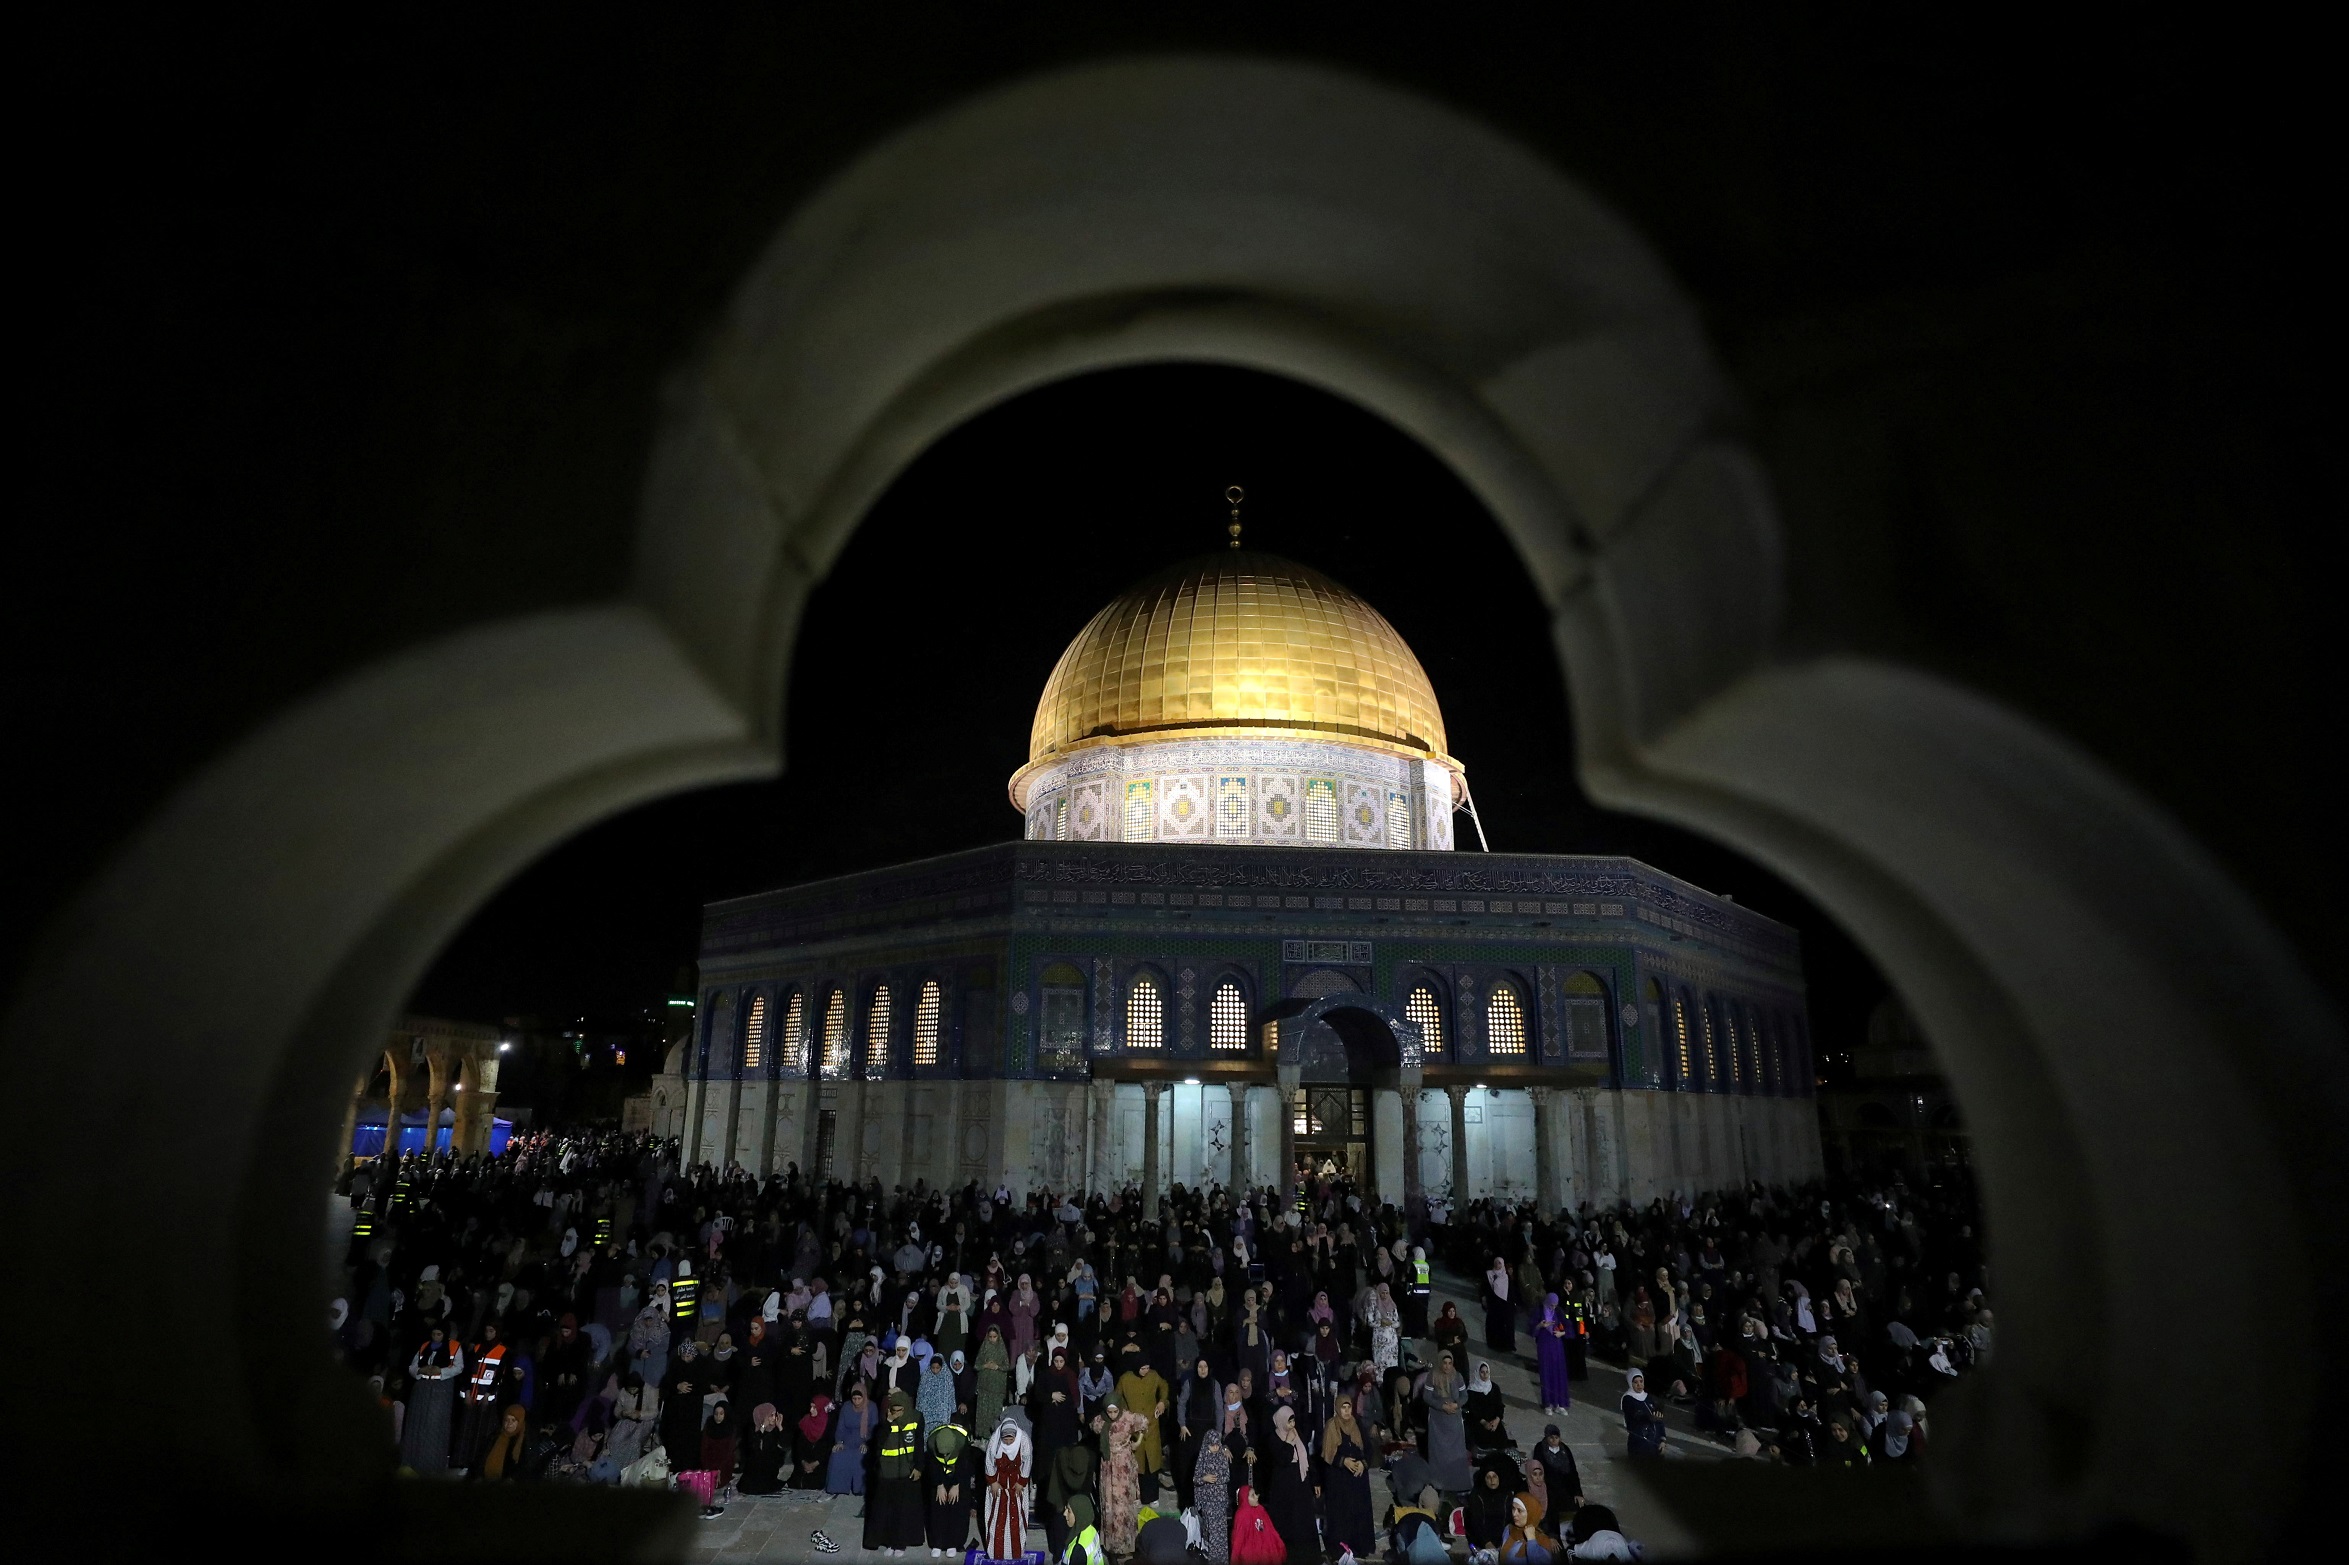 مسجد قبة الصخرة في باحة المسجد الأقصى في القدس المحتلة، 8 أيار/مايو 2021. (عمار عوض/ رويترز)